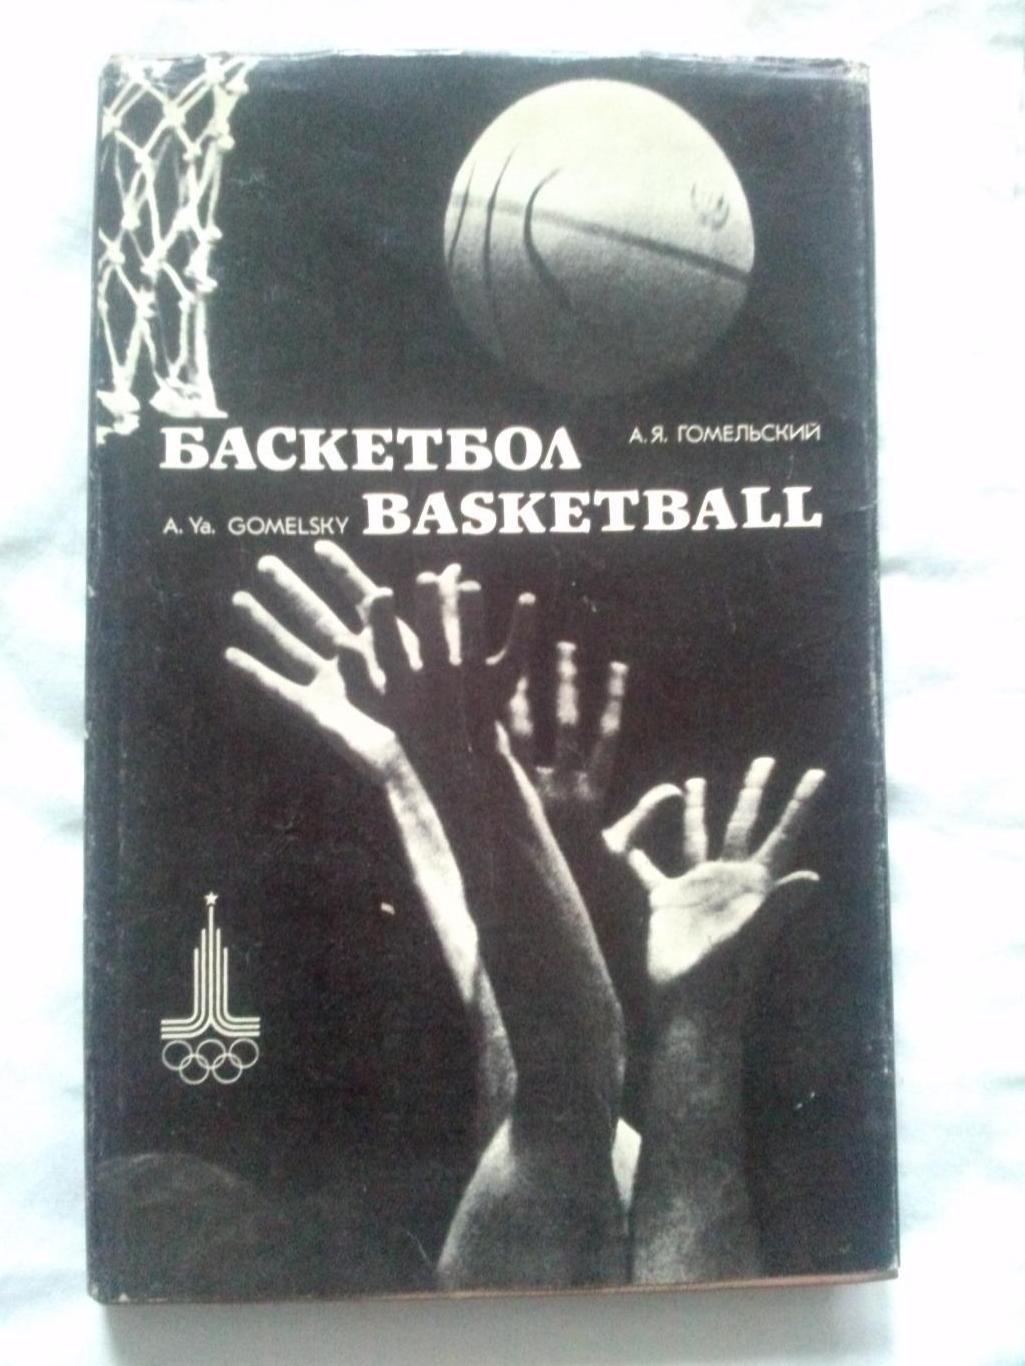 А.Я. Гомельский -Баскетбол1980 г. Фотоальбом (Олимпиада) суперобложка